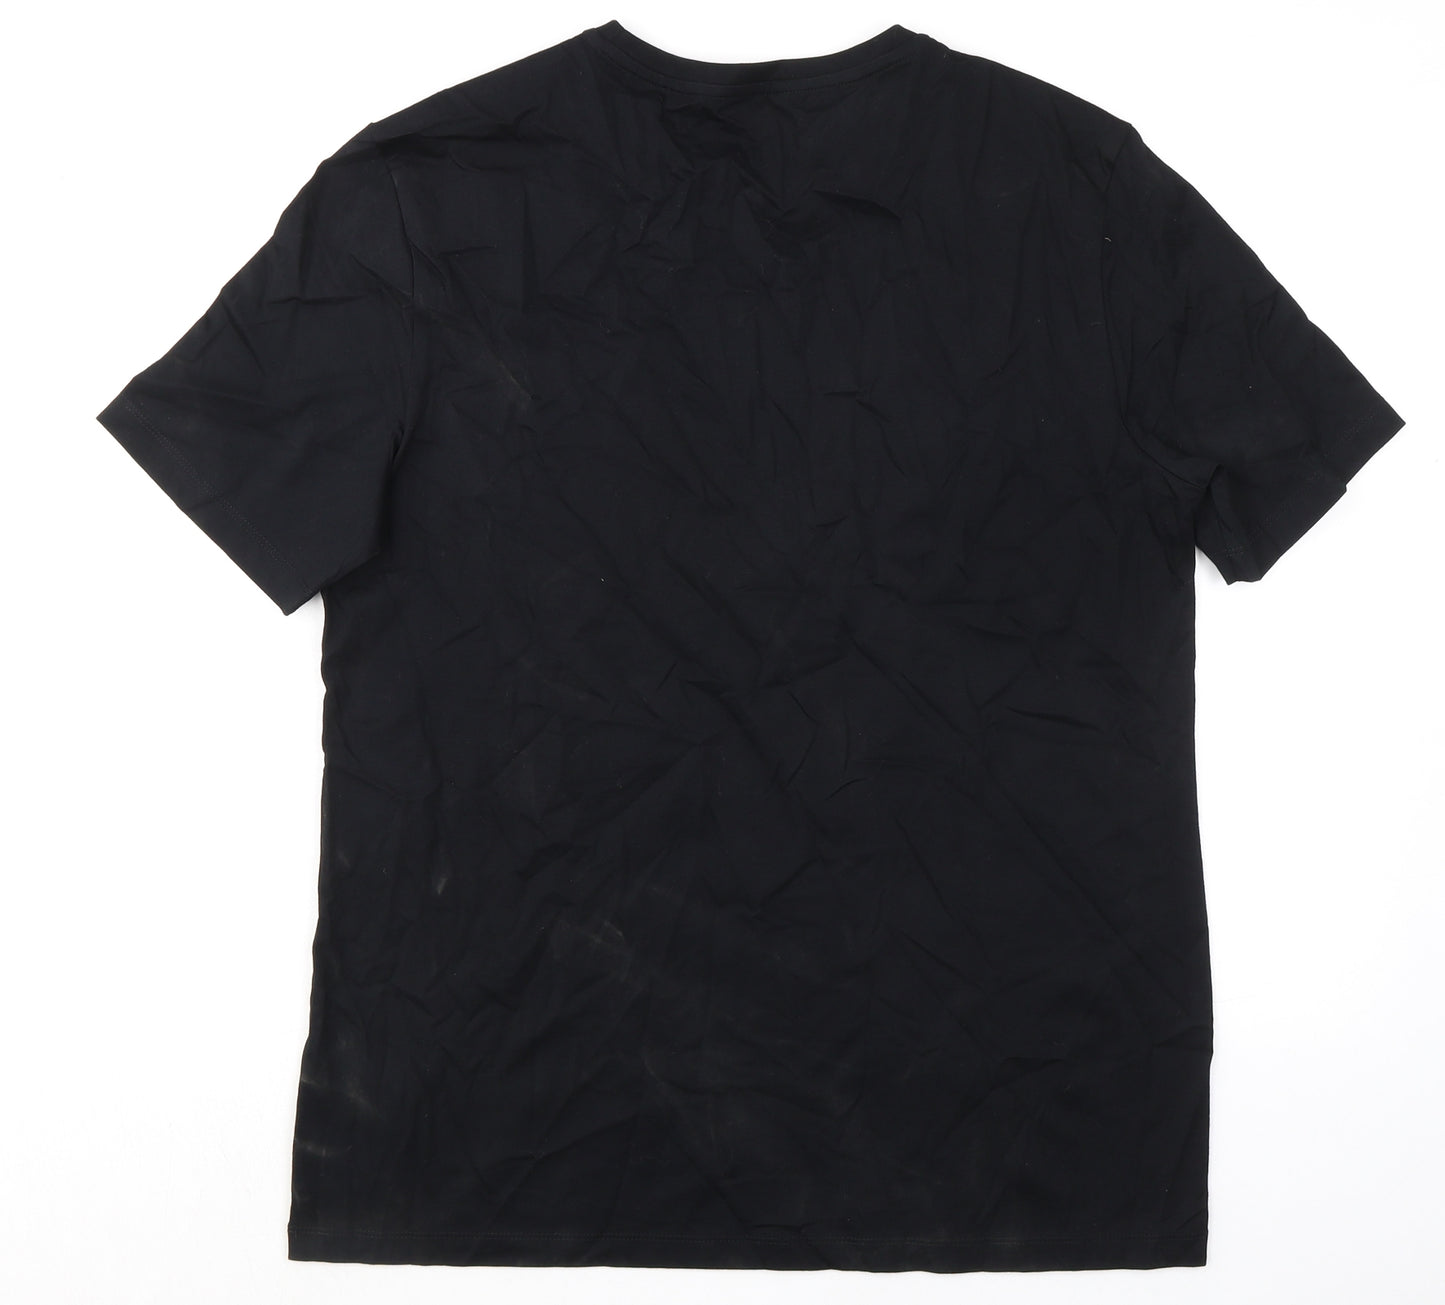 Autograph Mens Black Cotton T-Shirt Size M Crew Neck